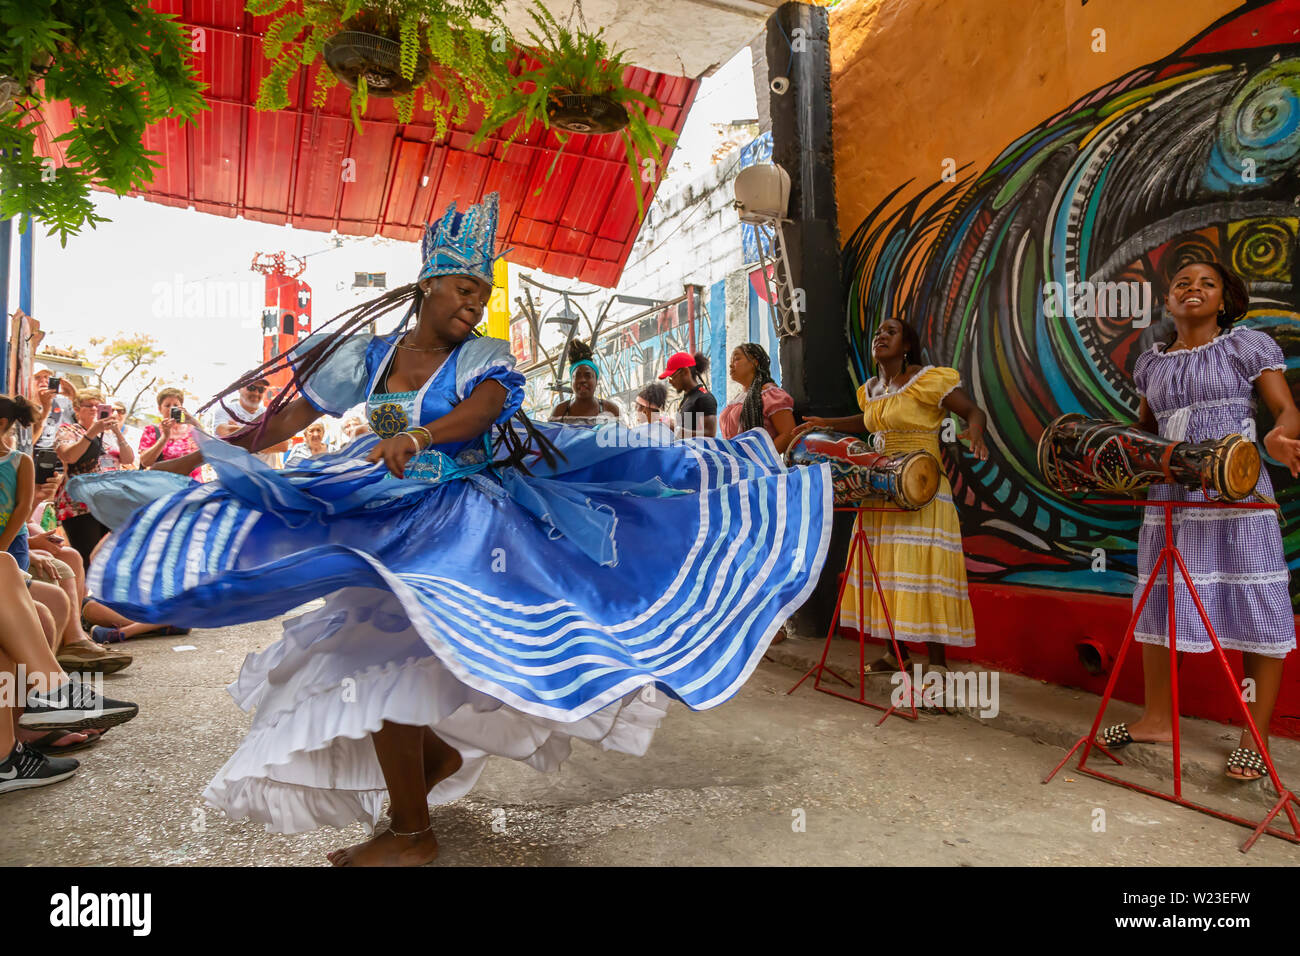 L'Avana, Cuba - 29 Maggio 2019: il popolo cubano sta eseguendo una danza africana nella vecchia città dell'Avana, capitale di Cuba, durante una luminosa e soleggiata giornata. Foto Stock